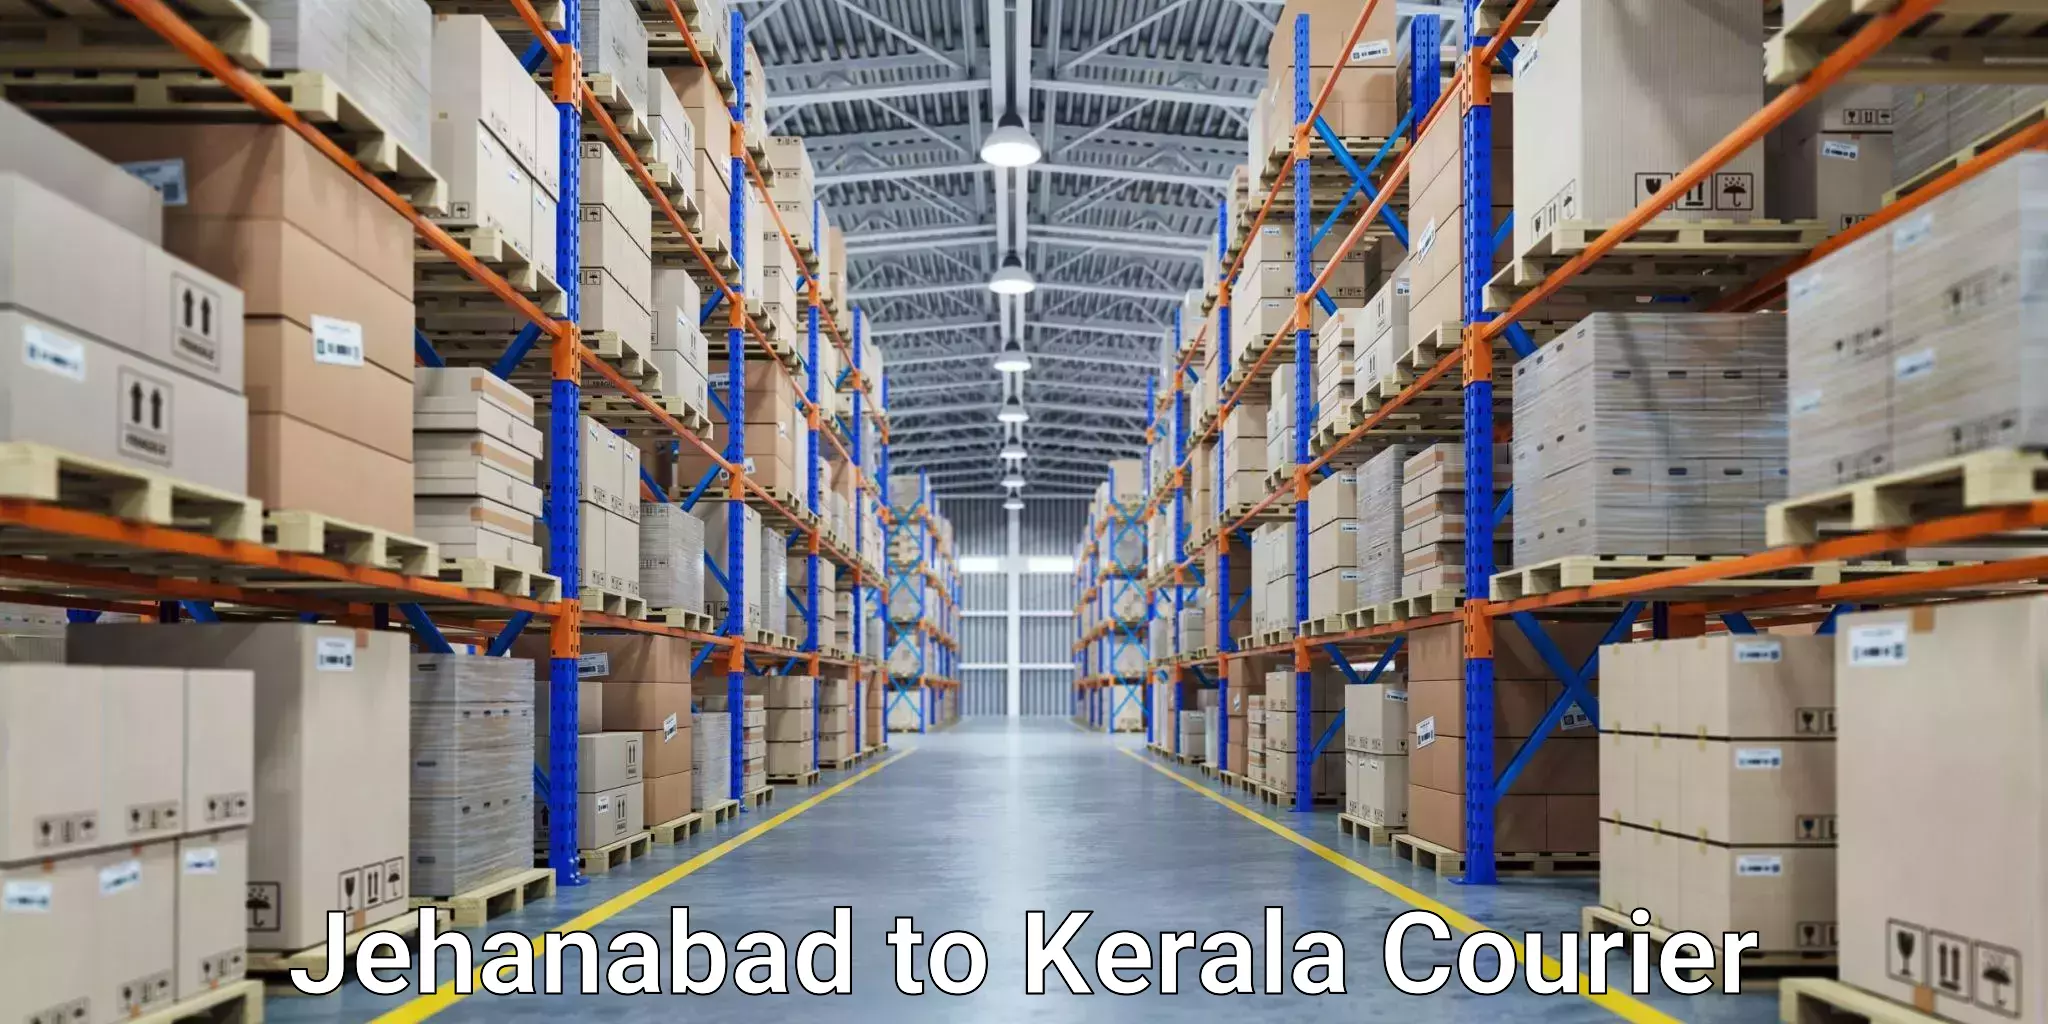 Automated parcel services Jehanabad to Mundakayam